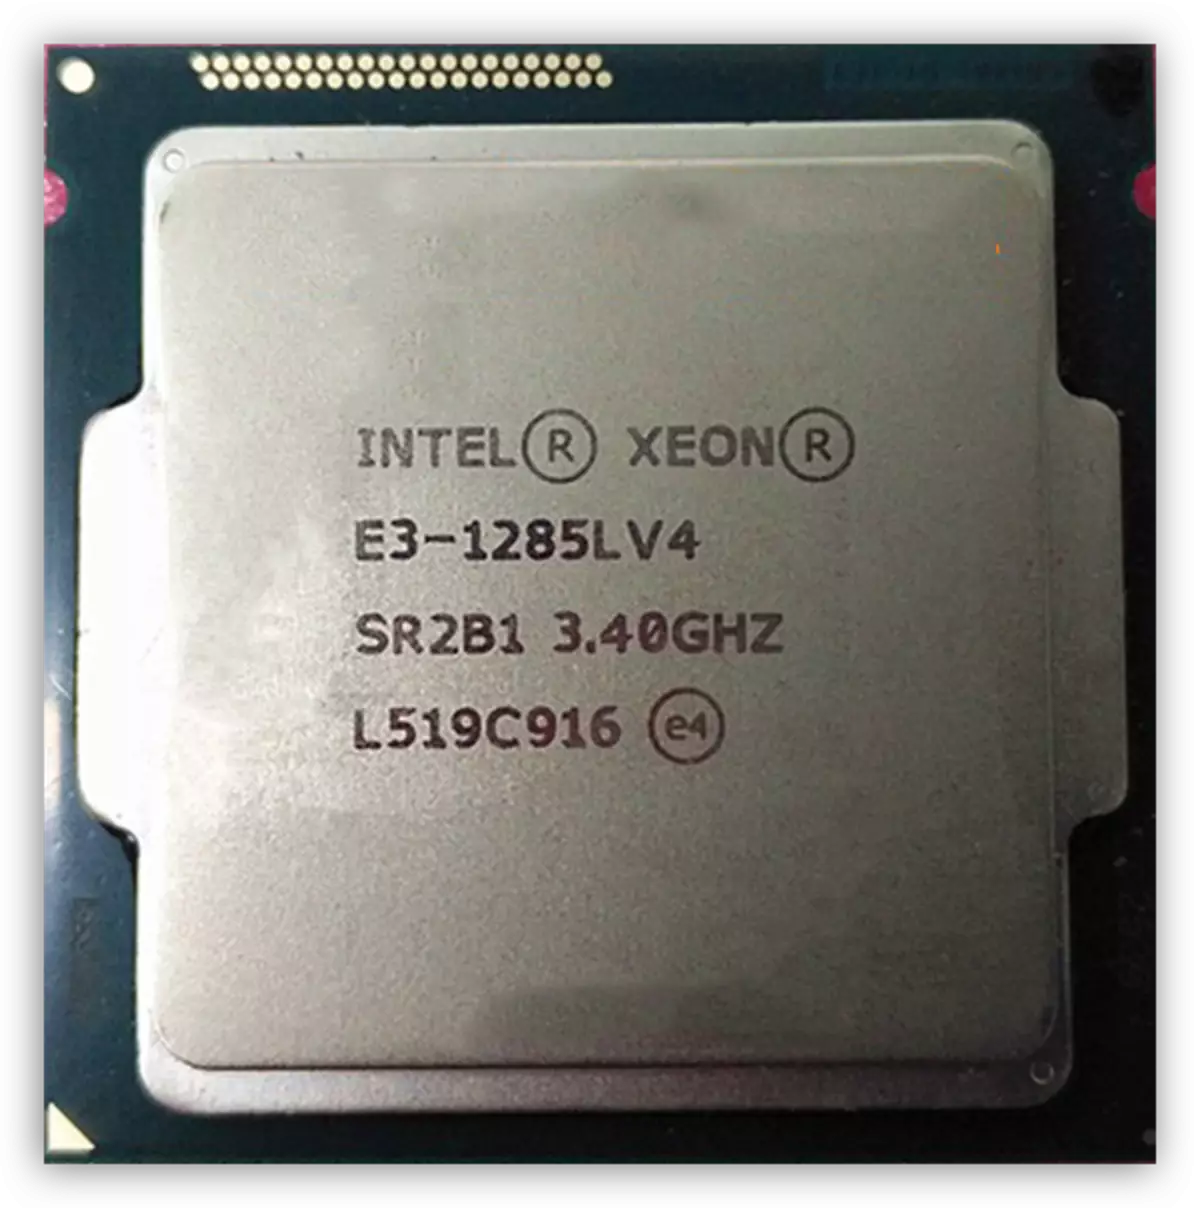 Xeon E3-1285L V4 processor mabapi le Broadwell Architell